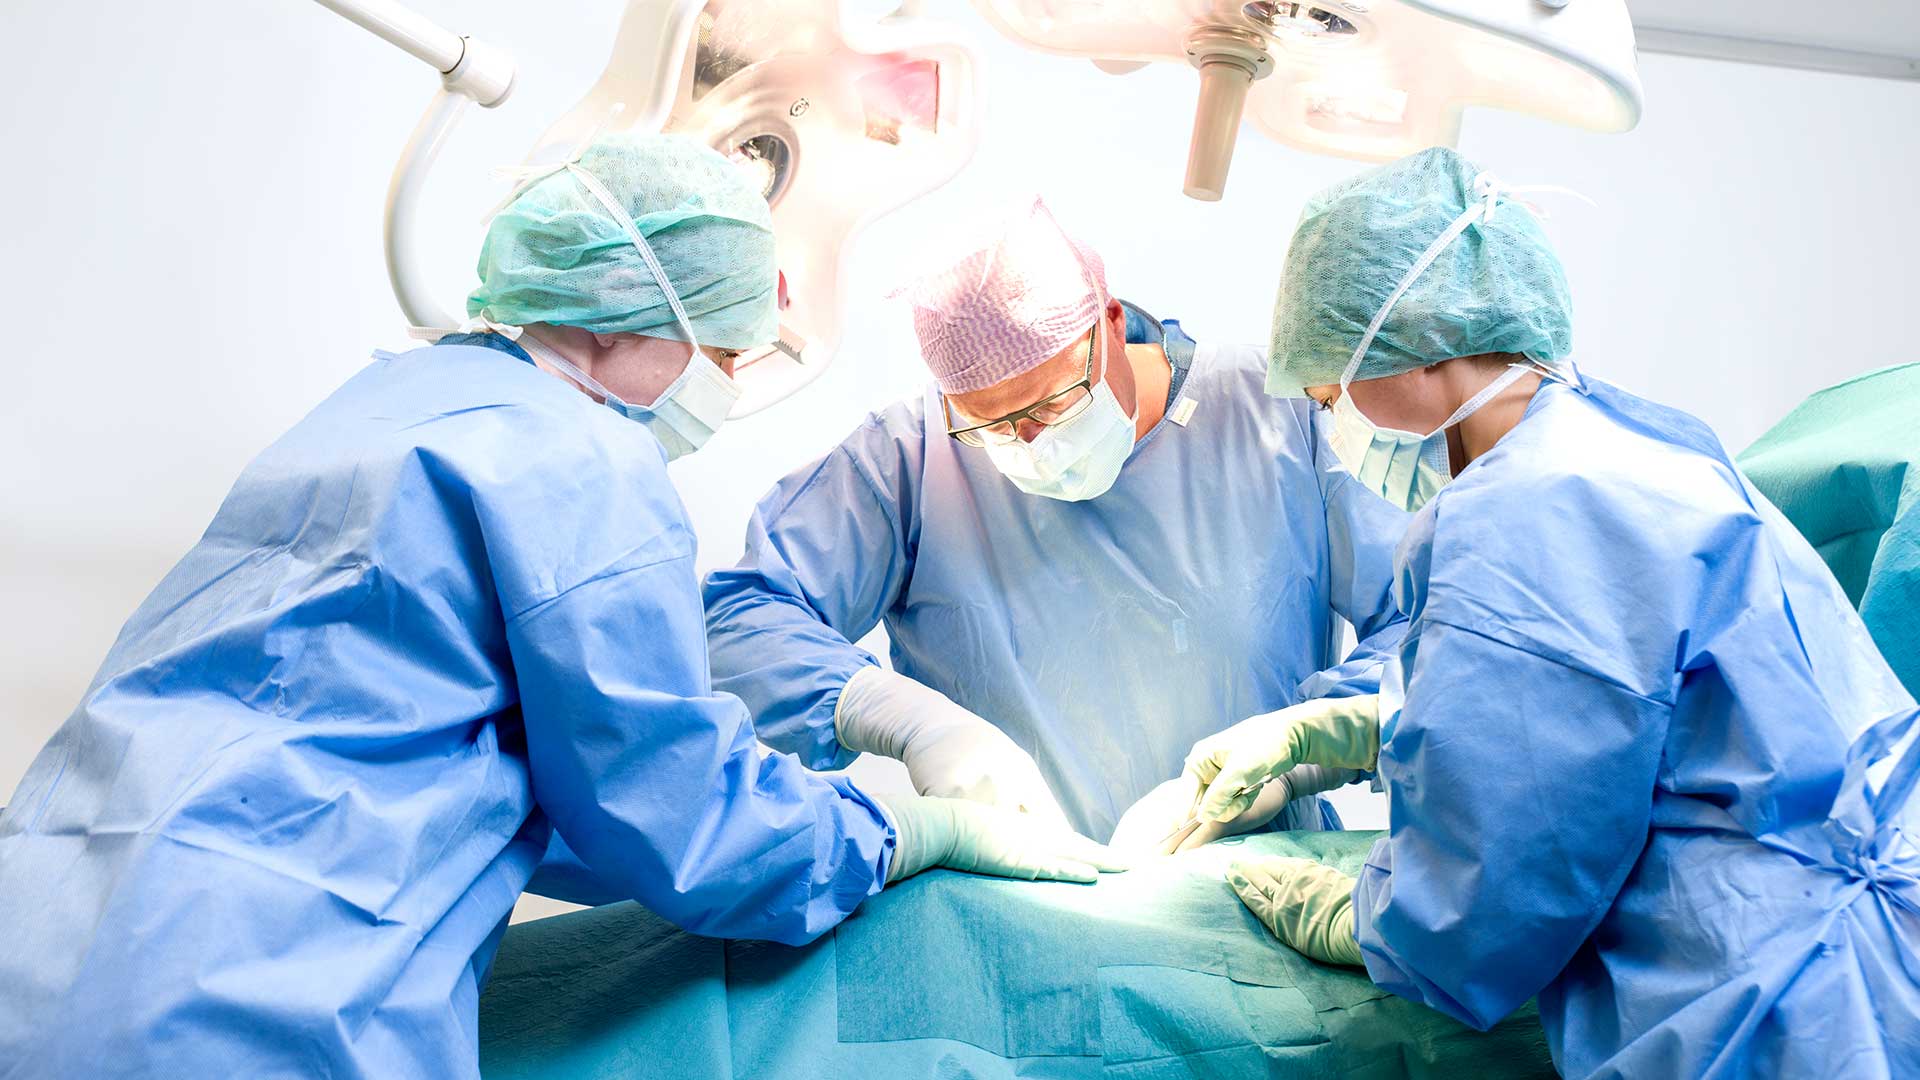 Chirurgien et personnel infirmier en cours d'intervention au bloc opératoire